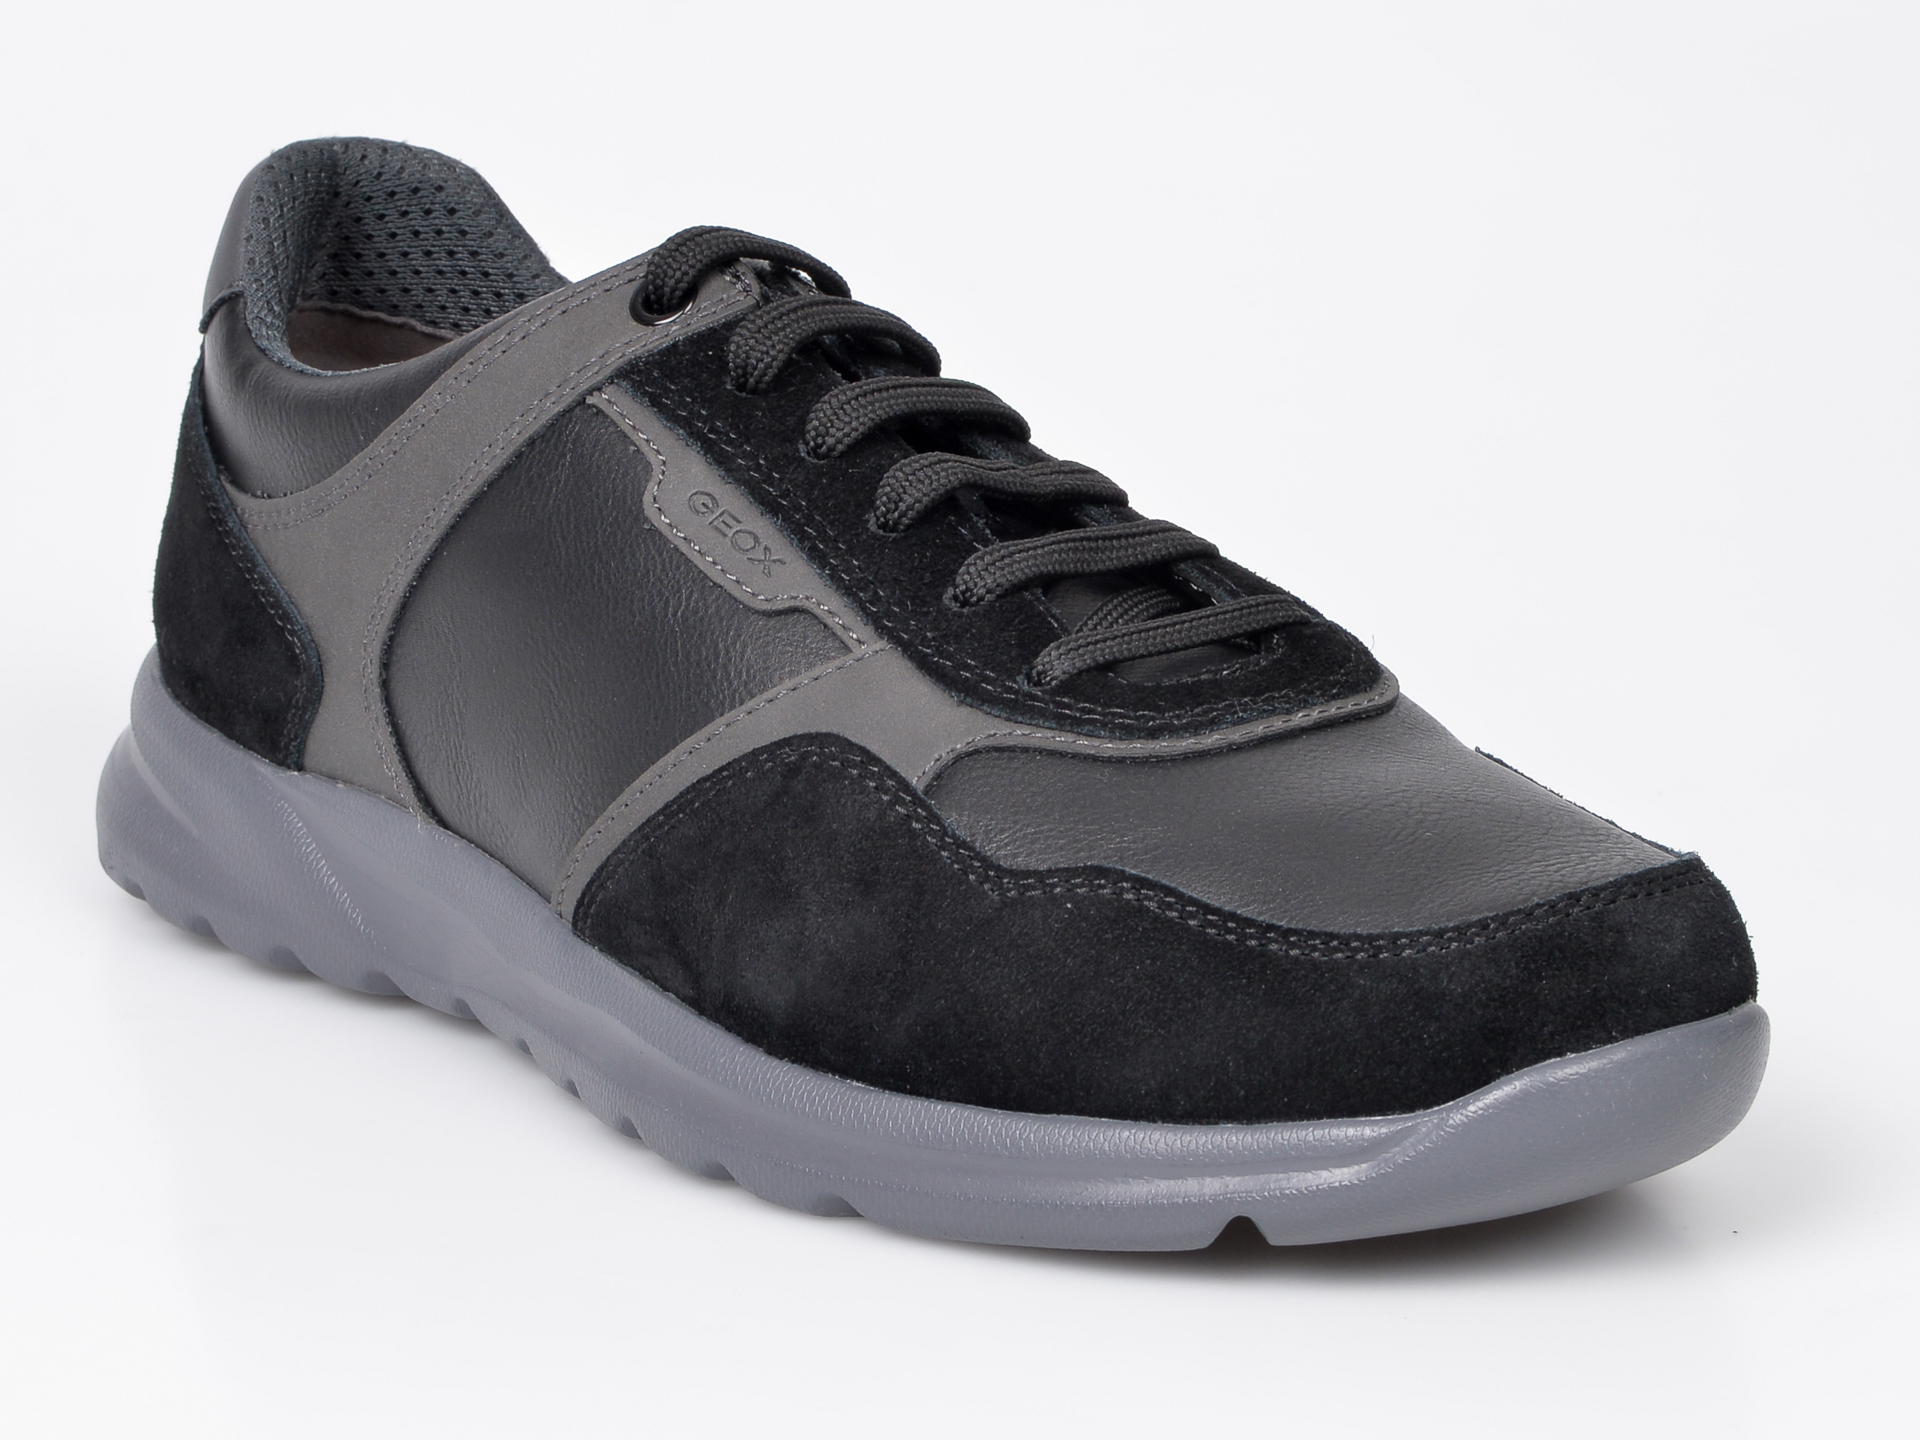 Pantofi sport GEOX negri, U940HA, din material textil si piele naturala